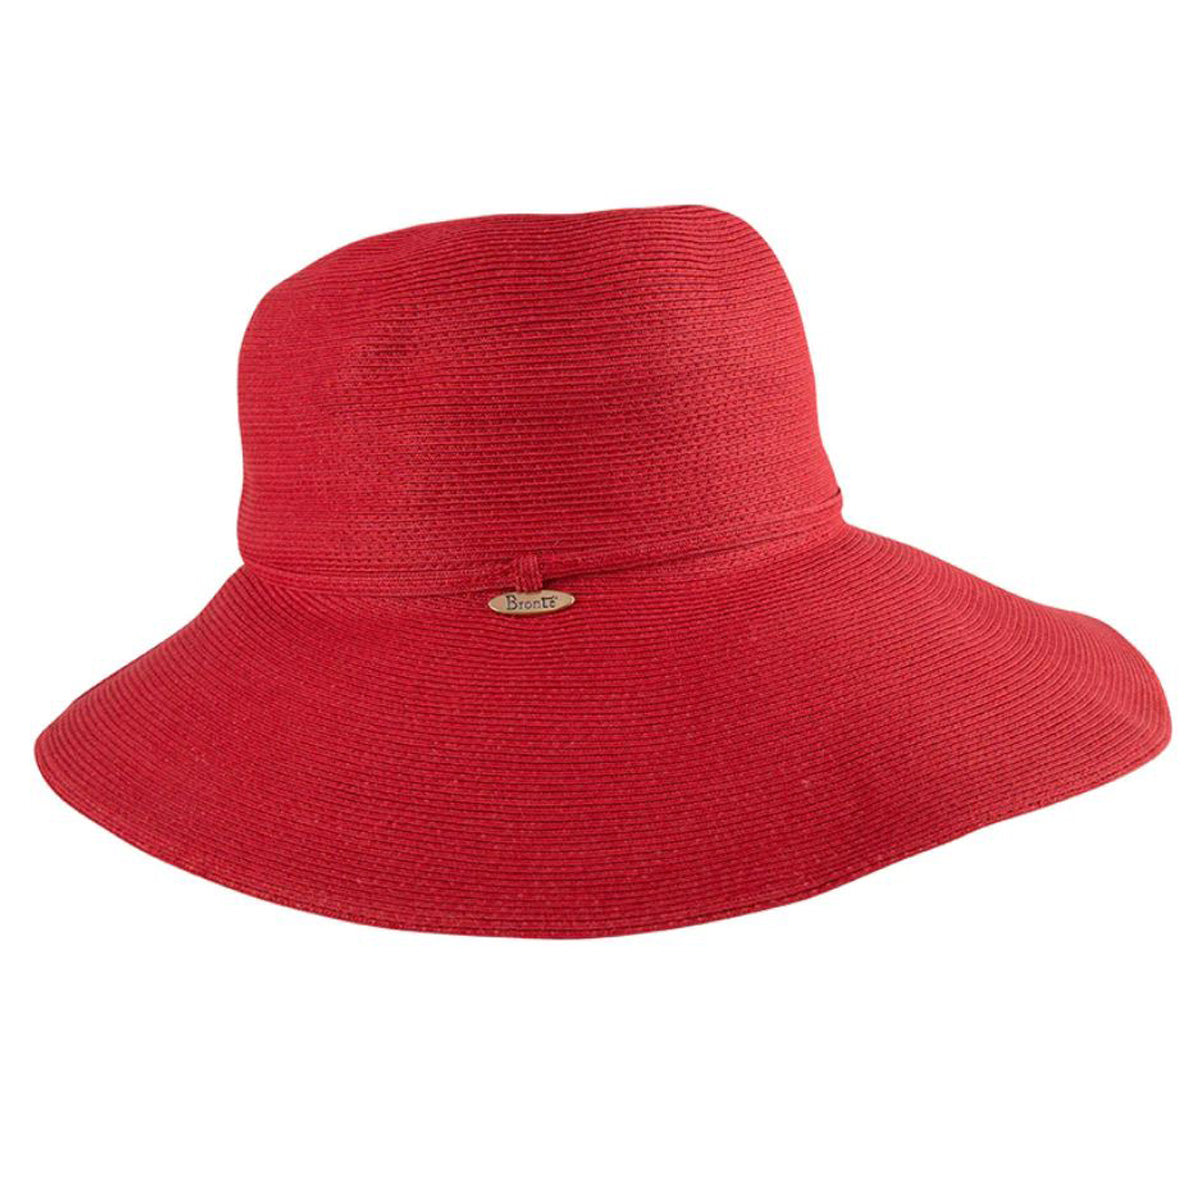 Melina Red Floppy Hat